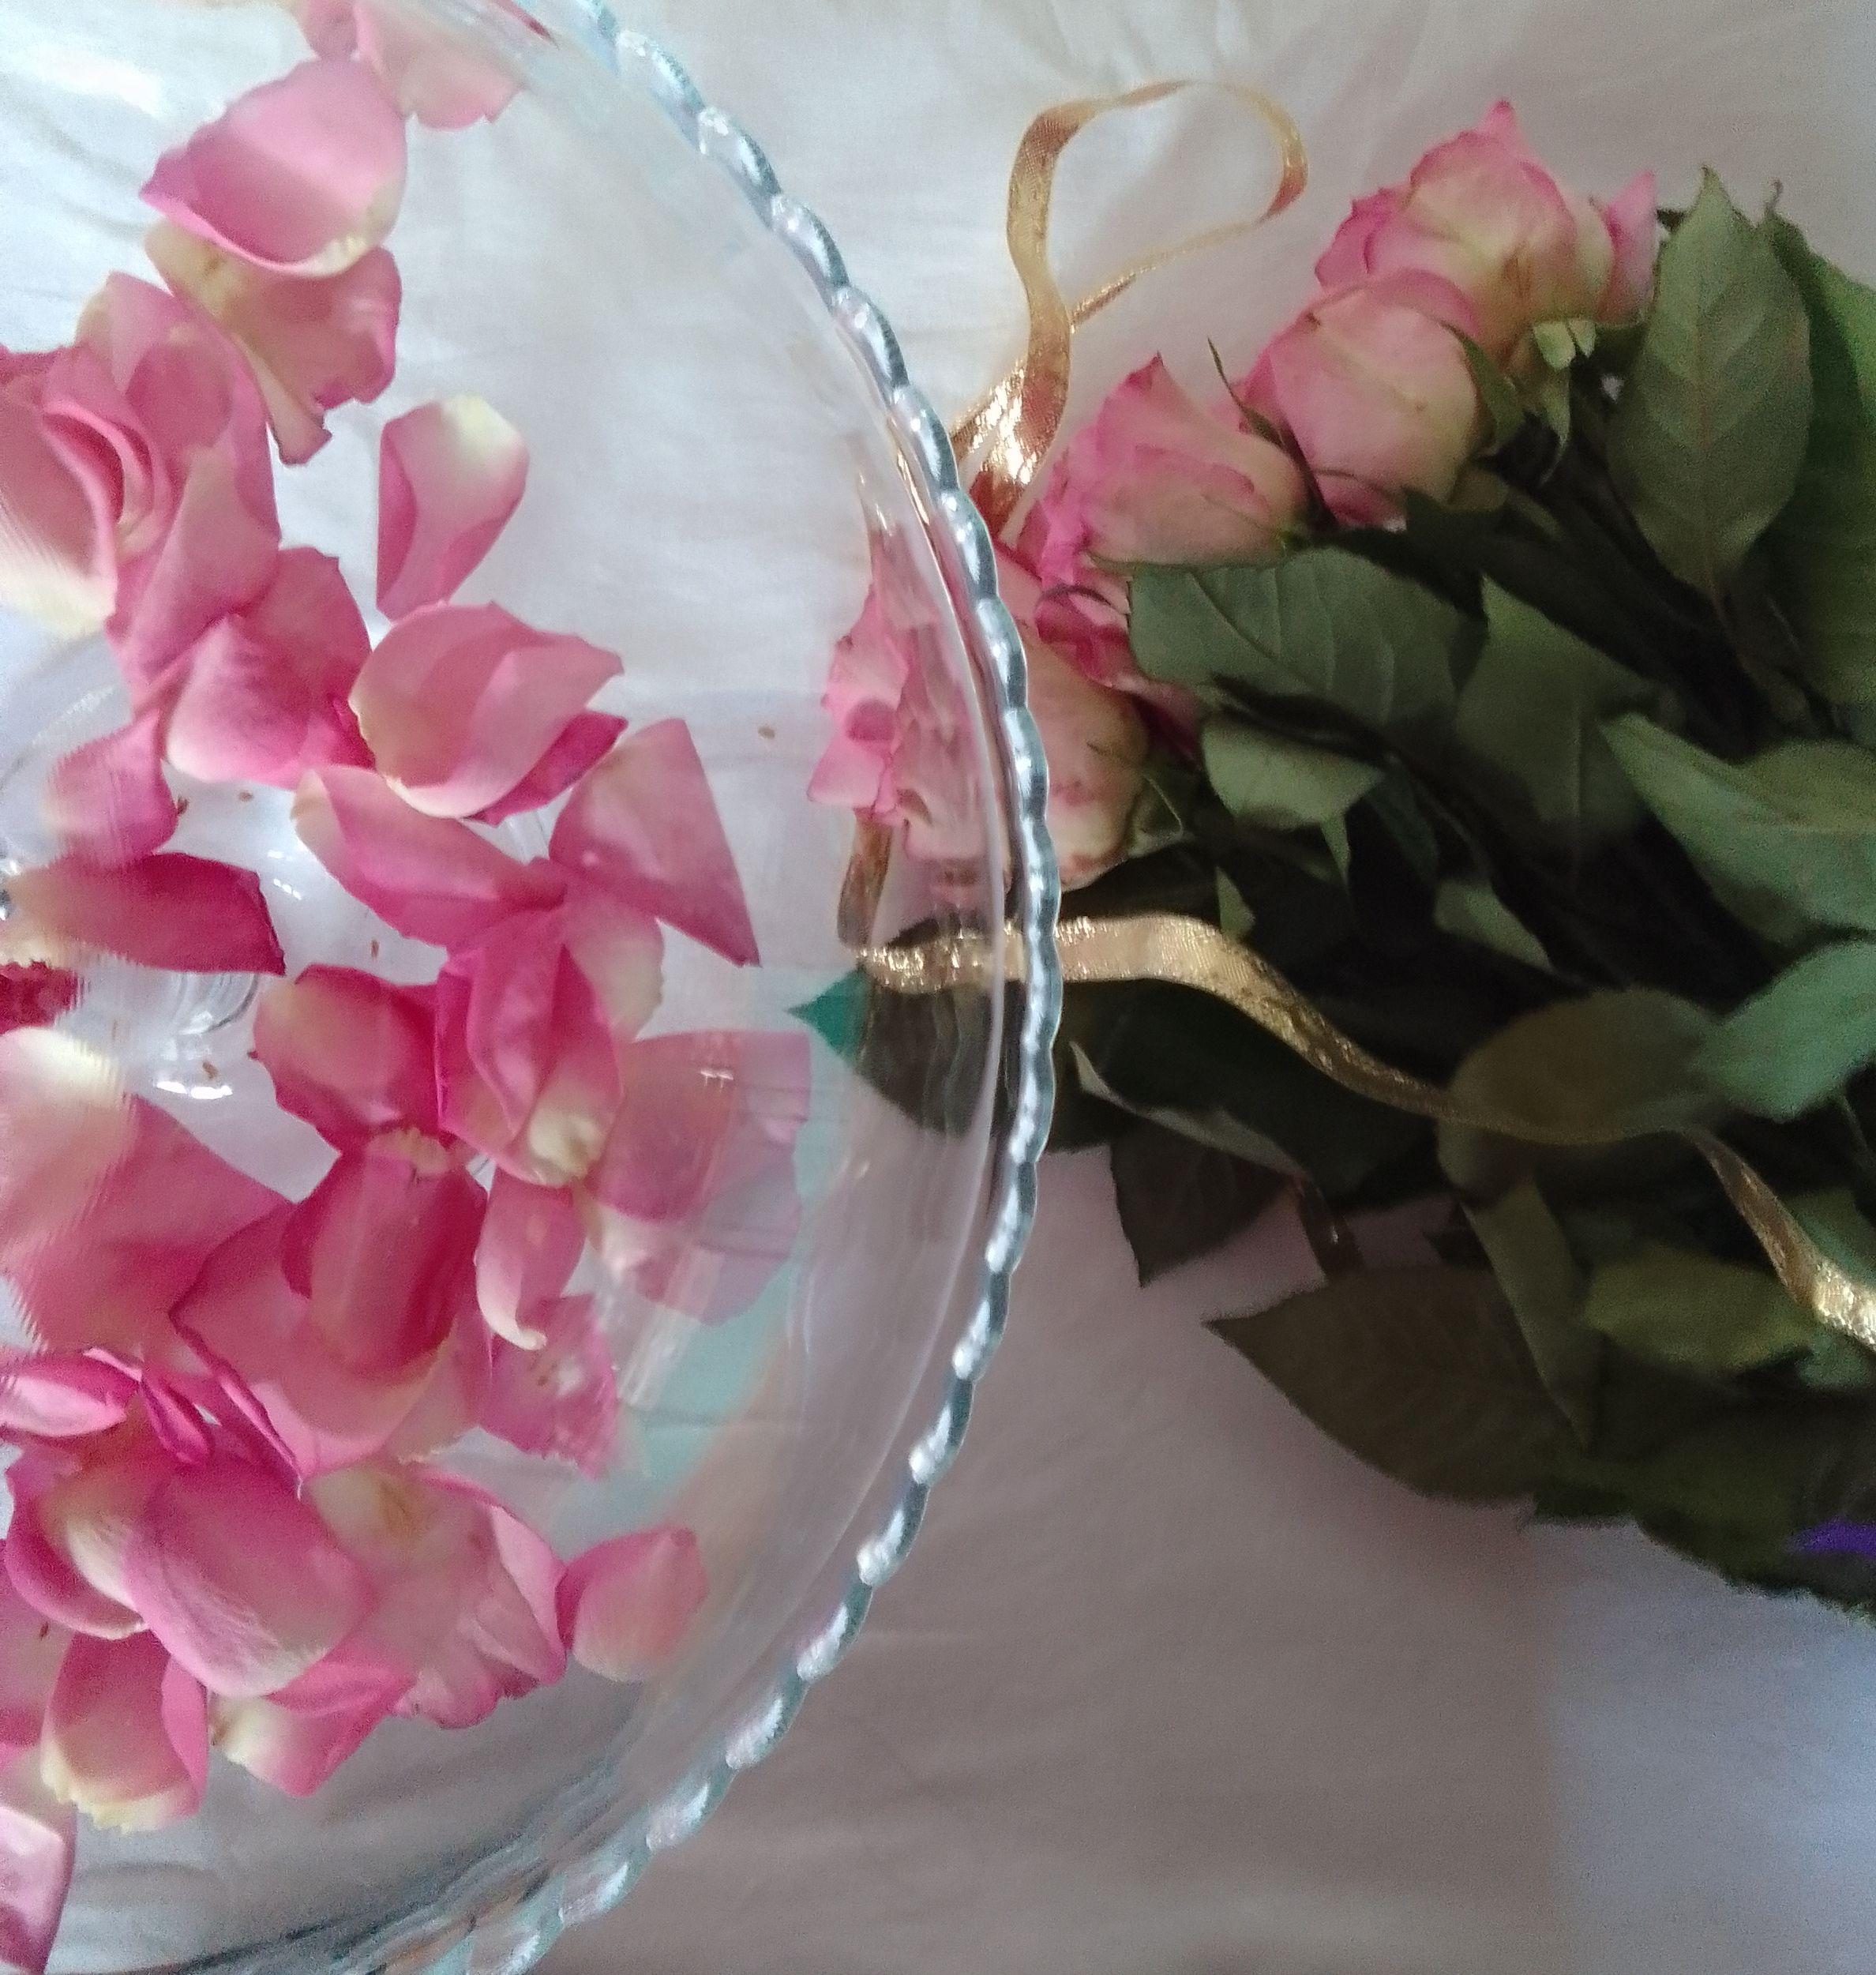 #Blumen #Rosen #Glas
Blumen trocknen fast genauso schön wie frische